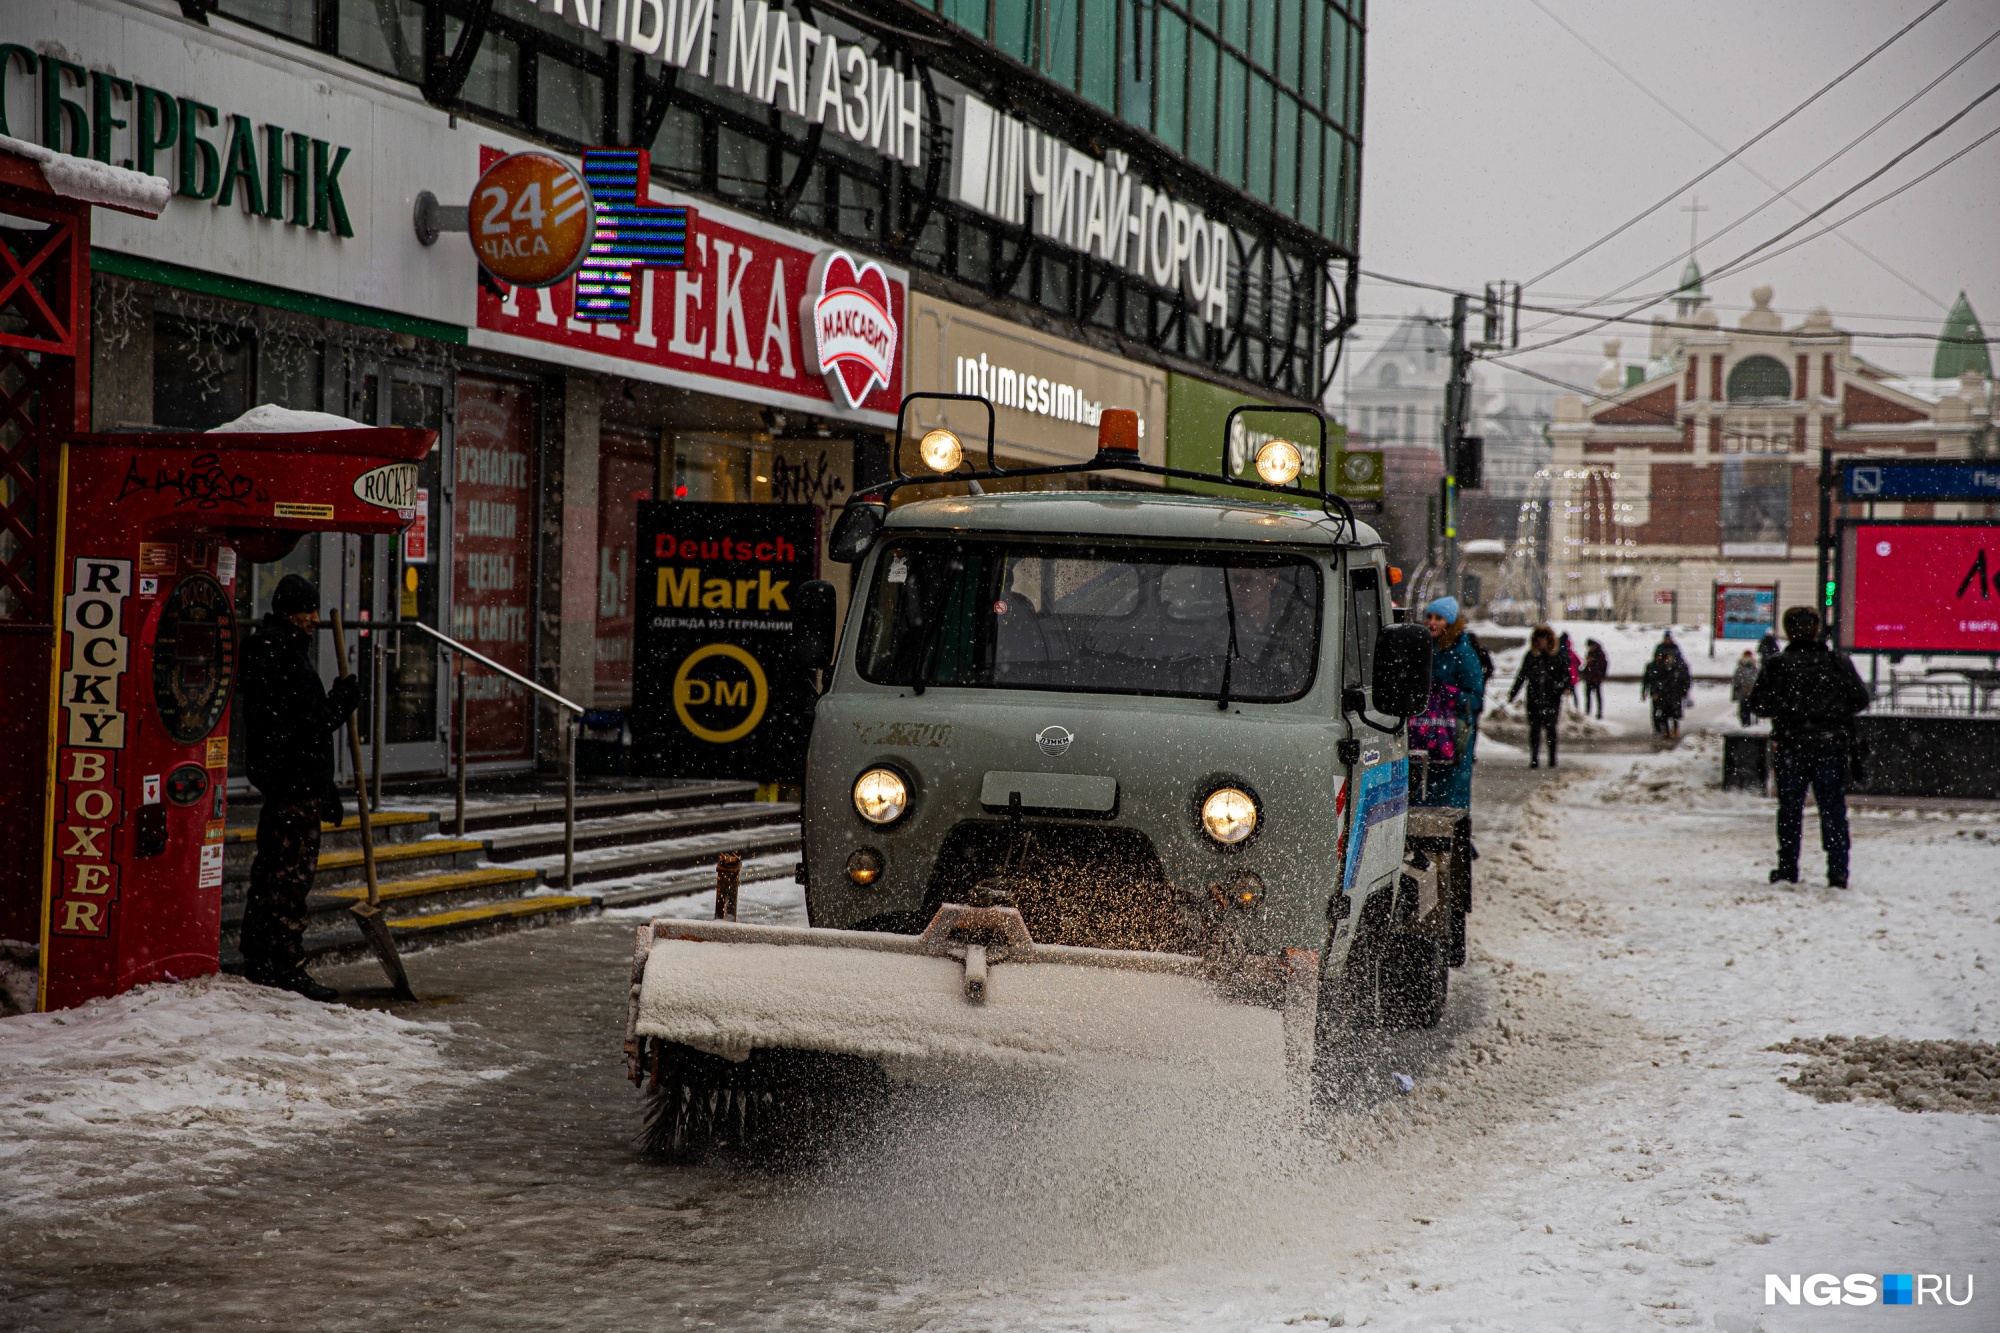 Какой будет погода в Новосибирске в первую неделю февраля? Изучаем прогнозы